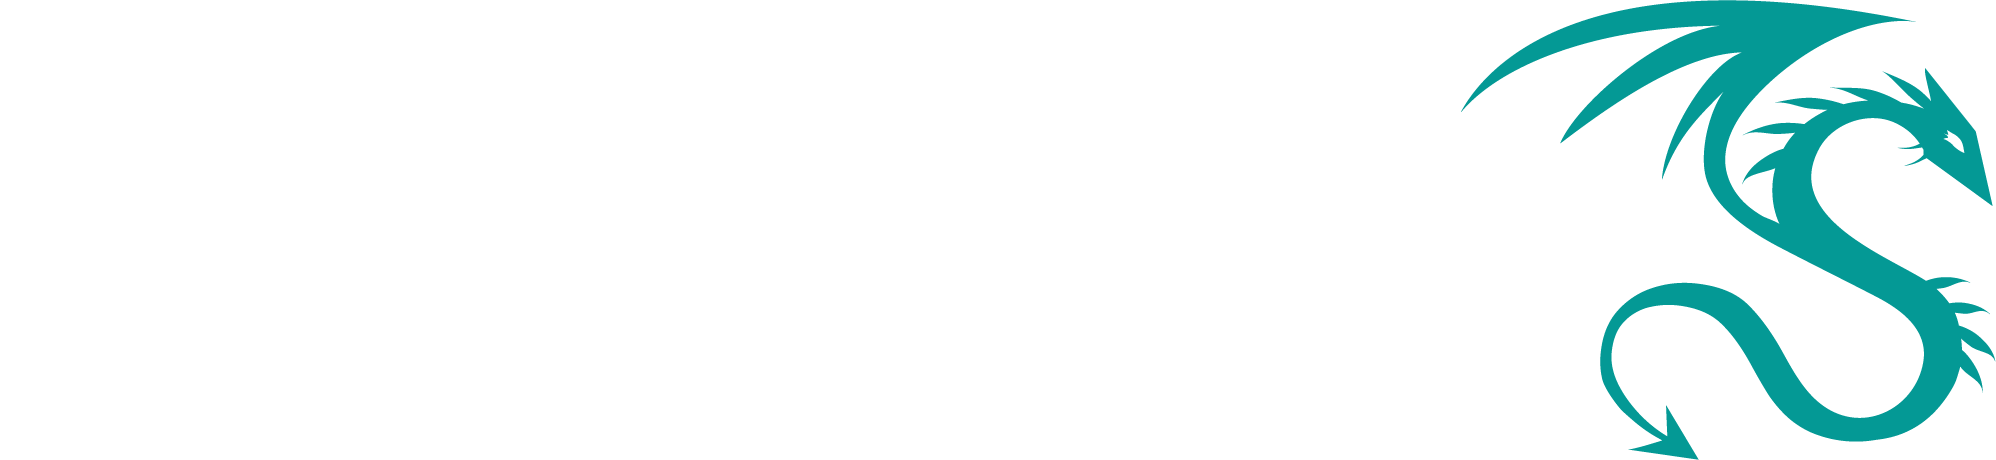 Dragos_Logo_KO_TEAL